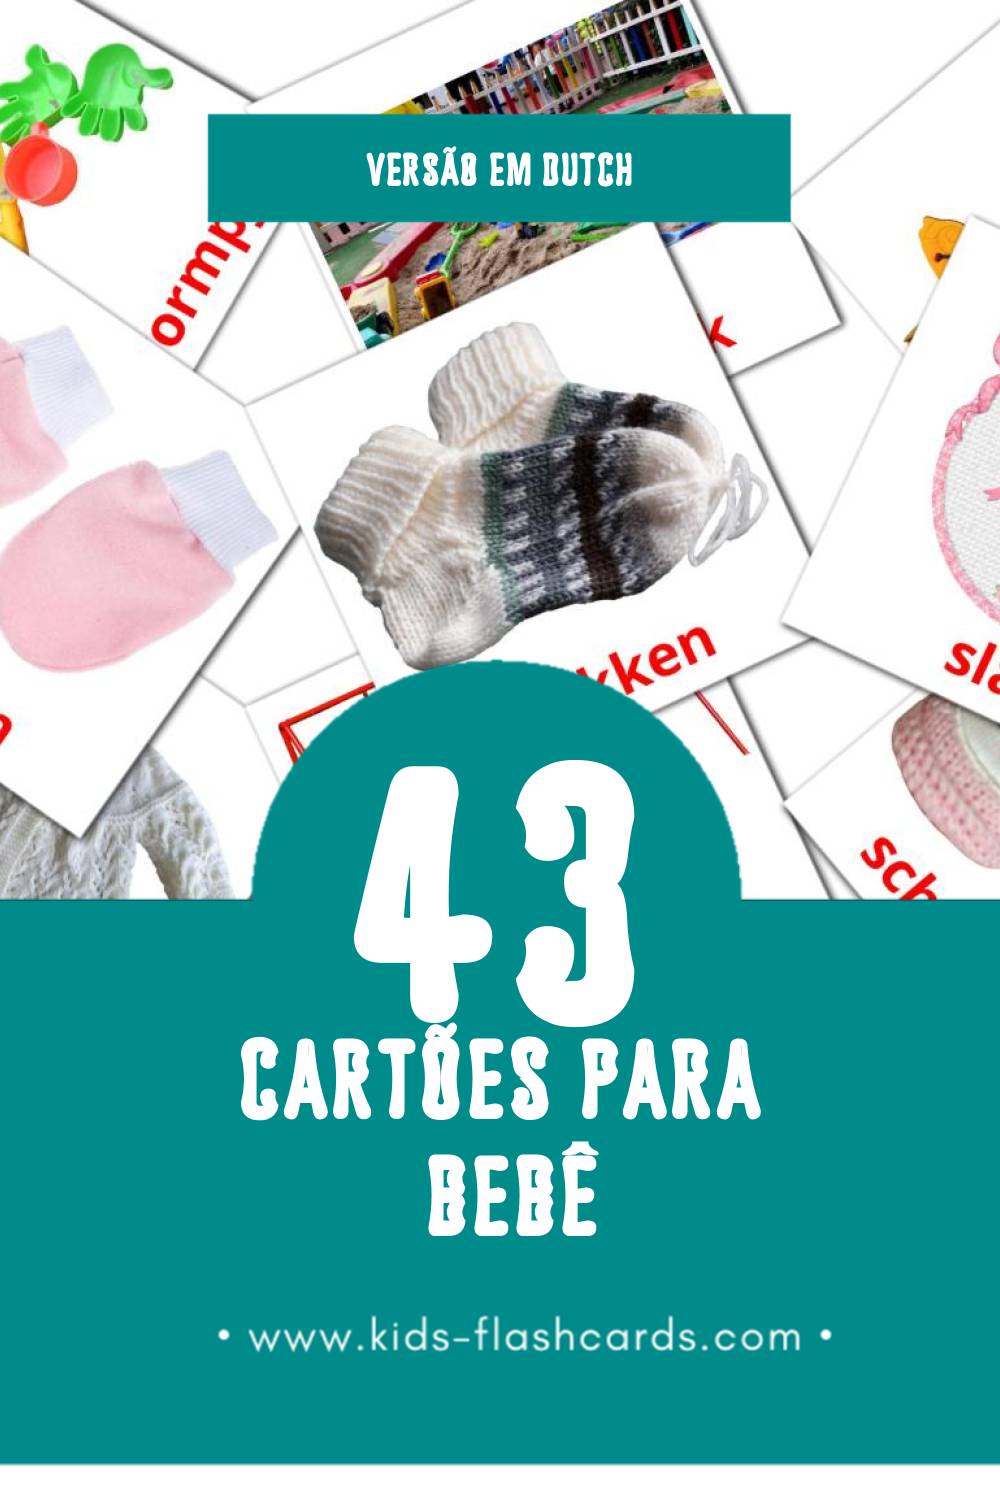 Flashcards de Peuters Visuais para Toddlers (43 cartões em Dutch)